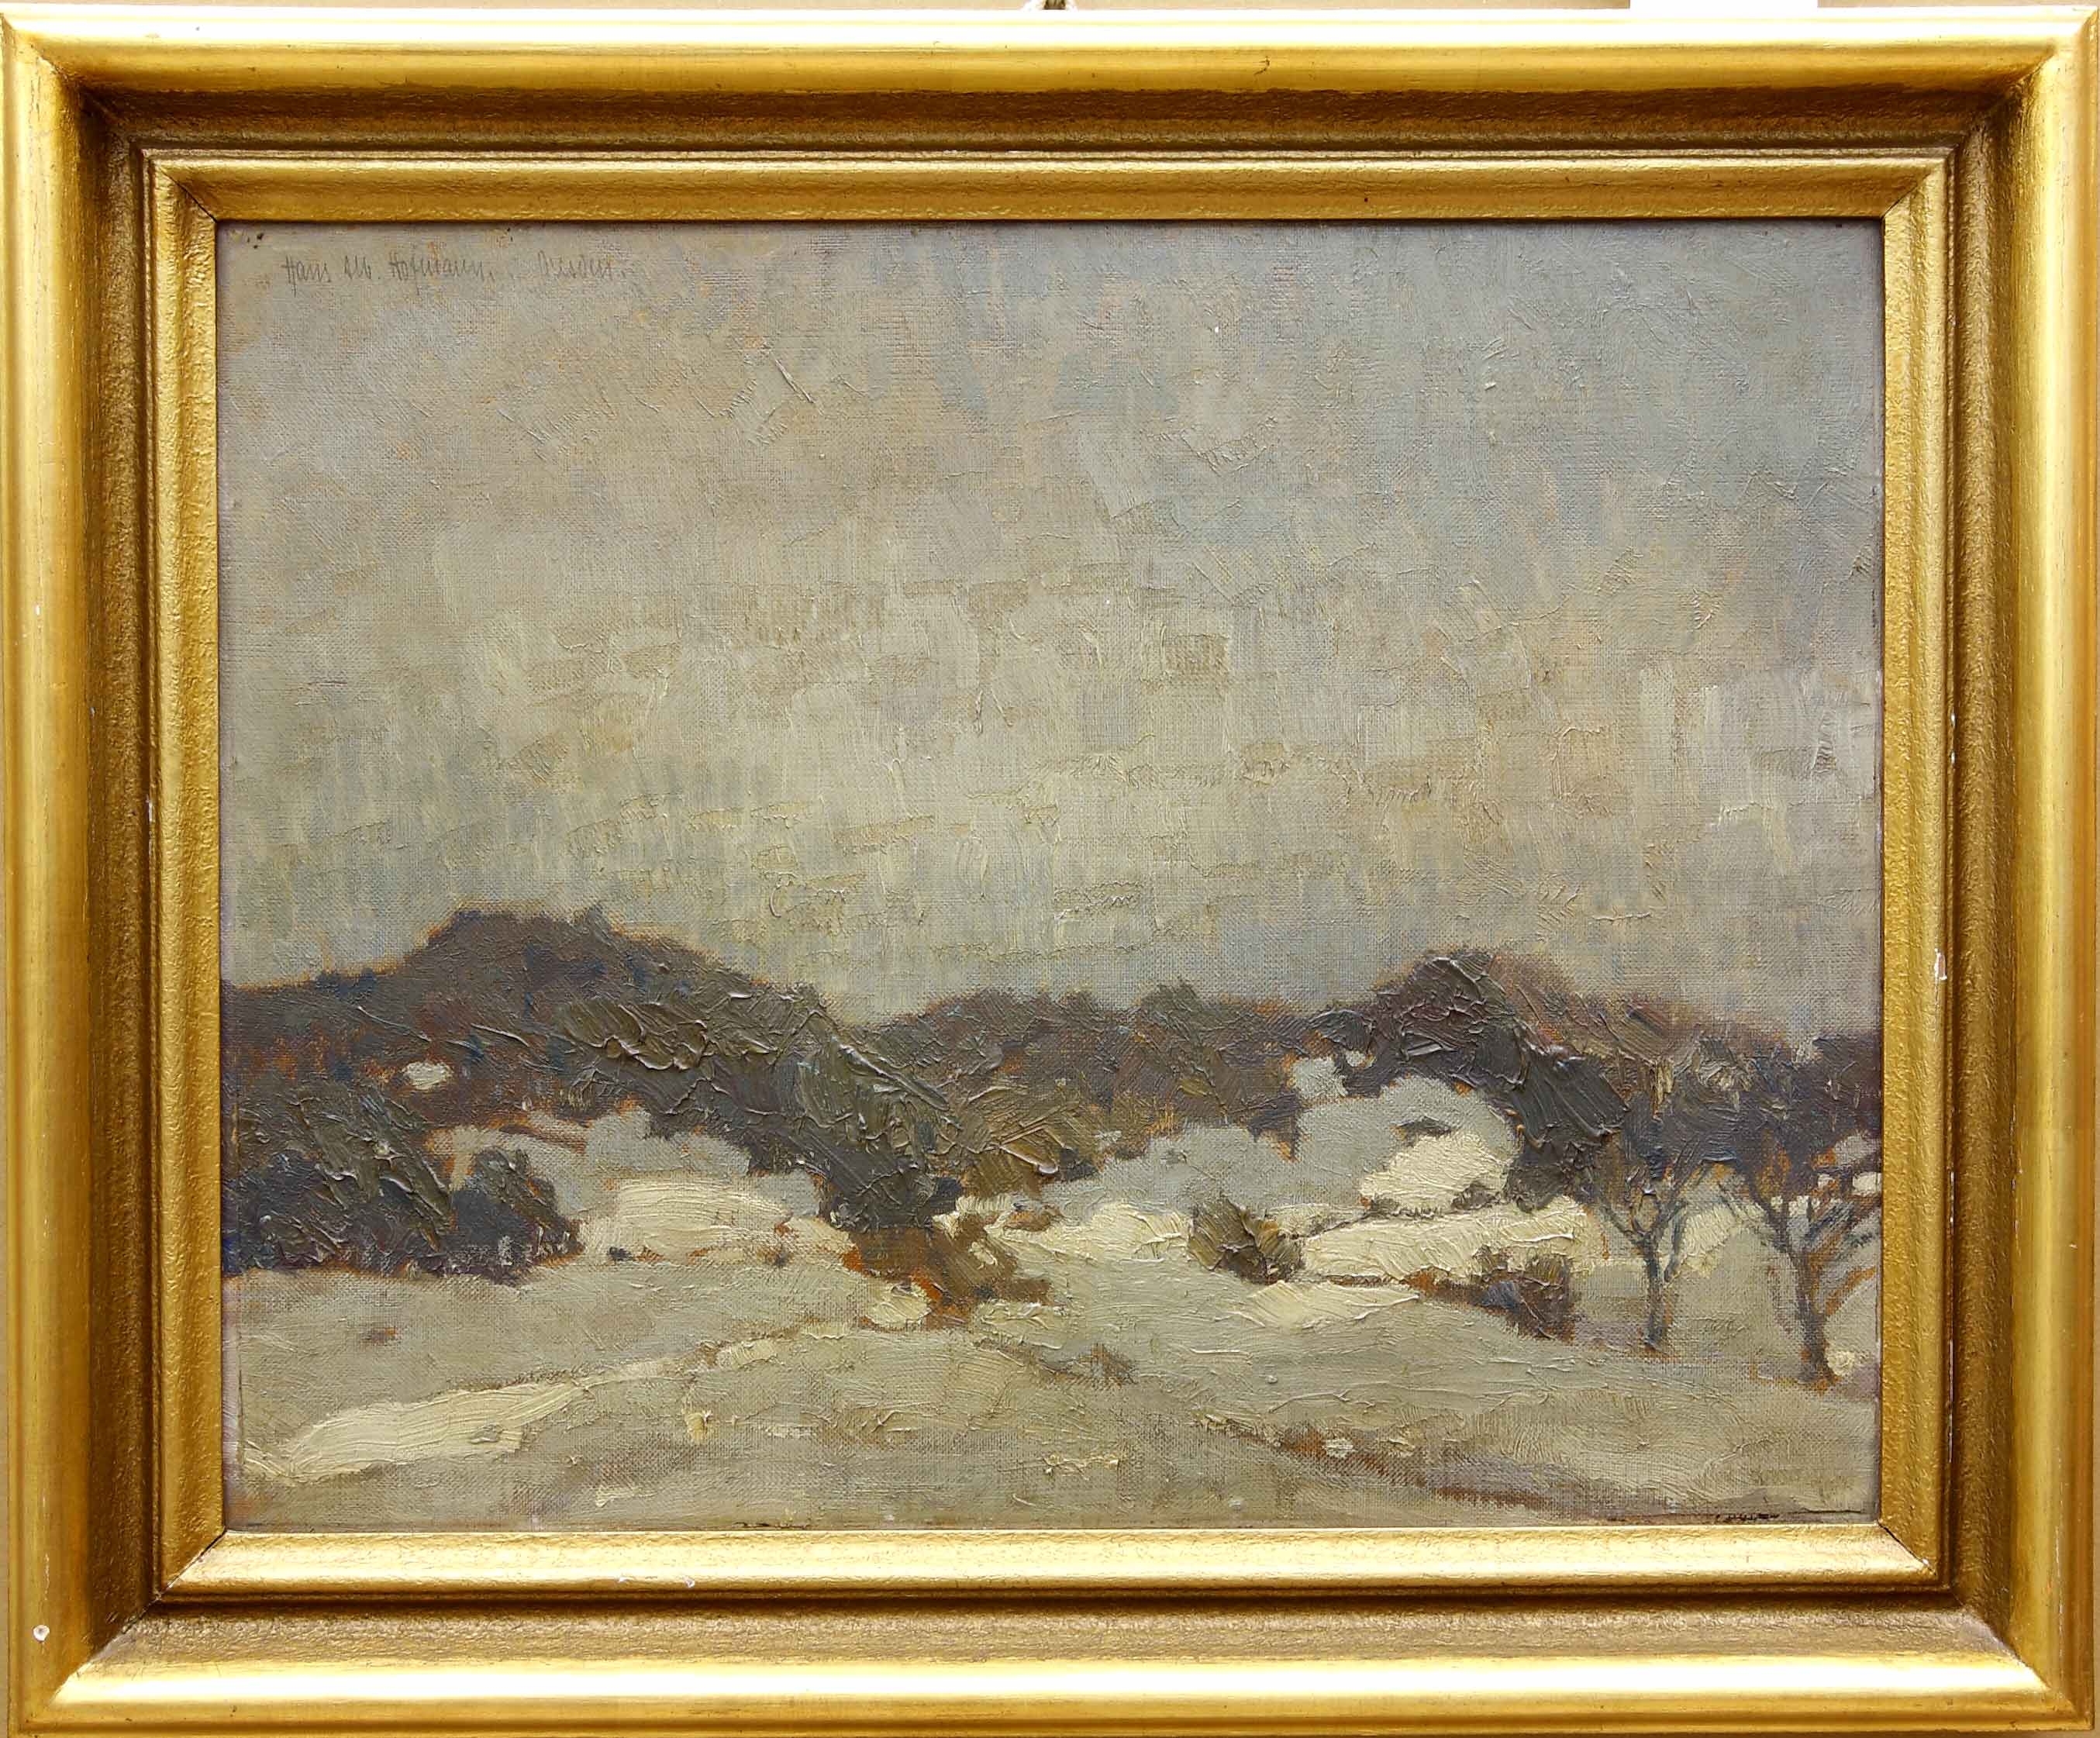 Auktionshaus Quentin Berlin  Gemälde Hofmann  Hanns Albert (1889 Karlsruhe â 1966) / Dresden. Landschaft bei Pirna. Jan. (19)10. Ãl auf Malkarton. 39 7 x 49 5 cm. Signiert und bez